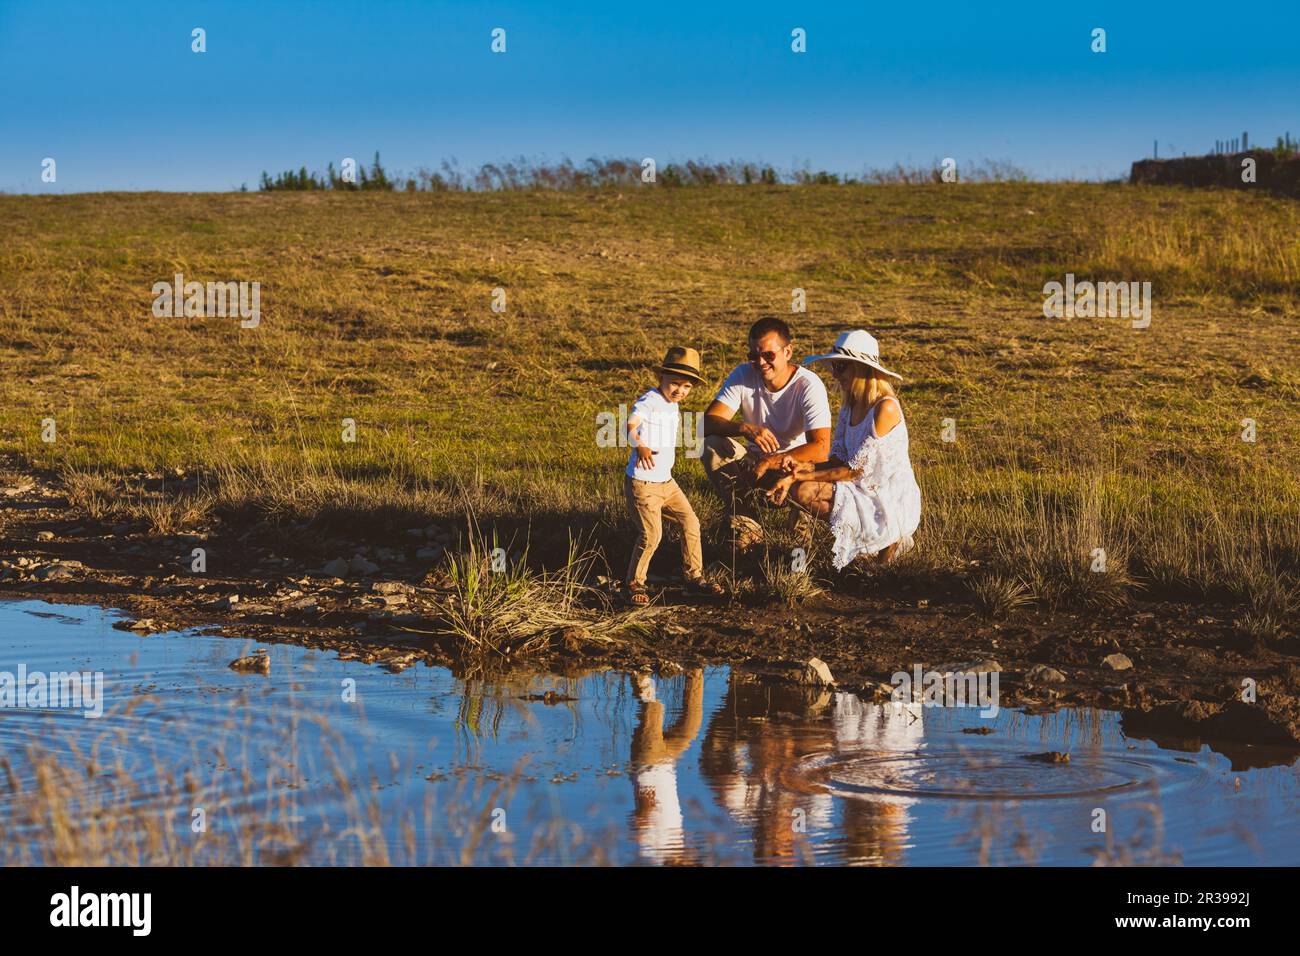 Promenade familiale près de l'étang, garçon jette des cailloux Banque D'Images